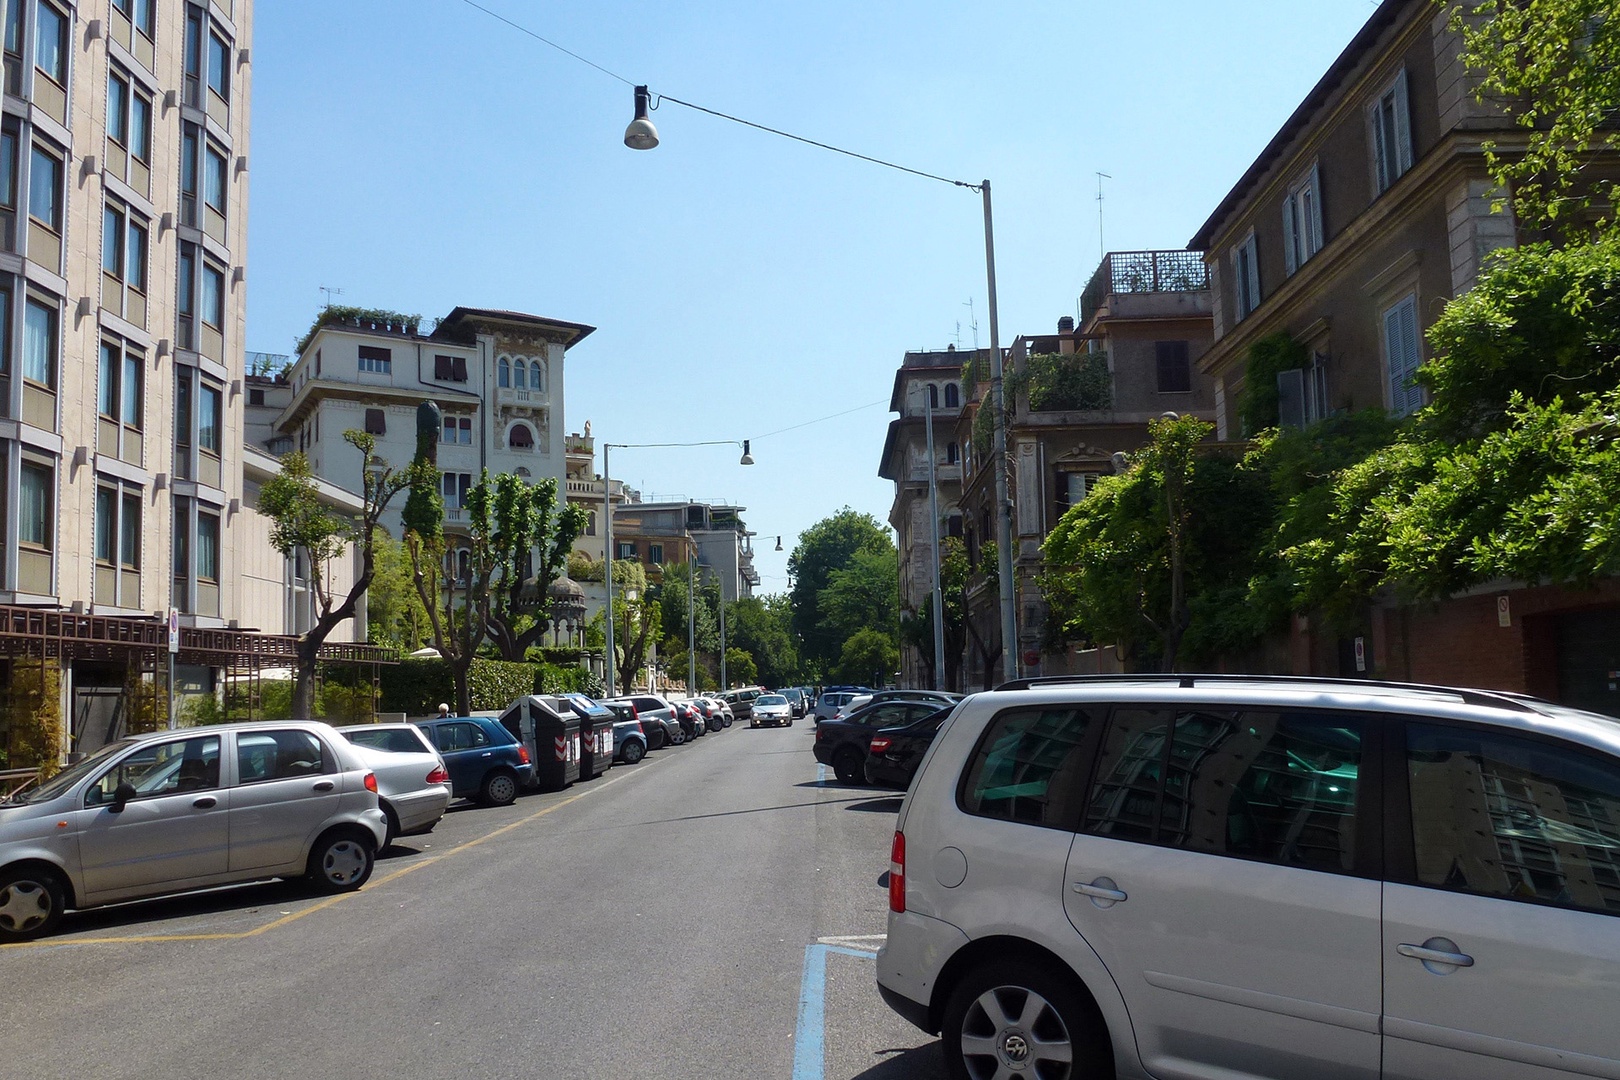 Treelined street location is characteristic of the neighborhood.